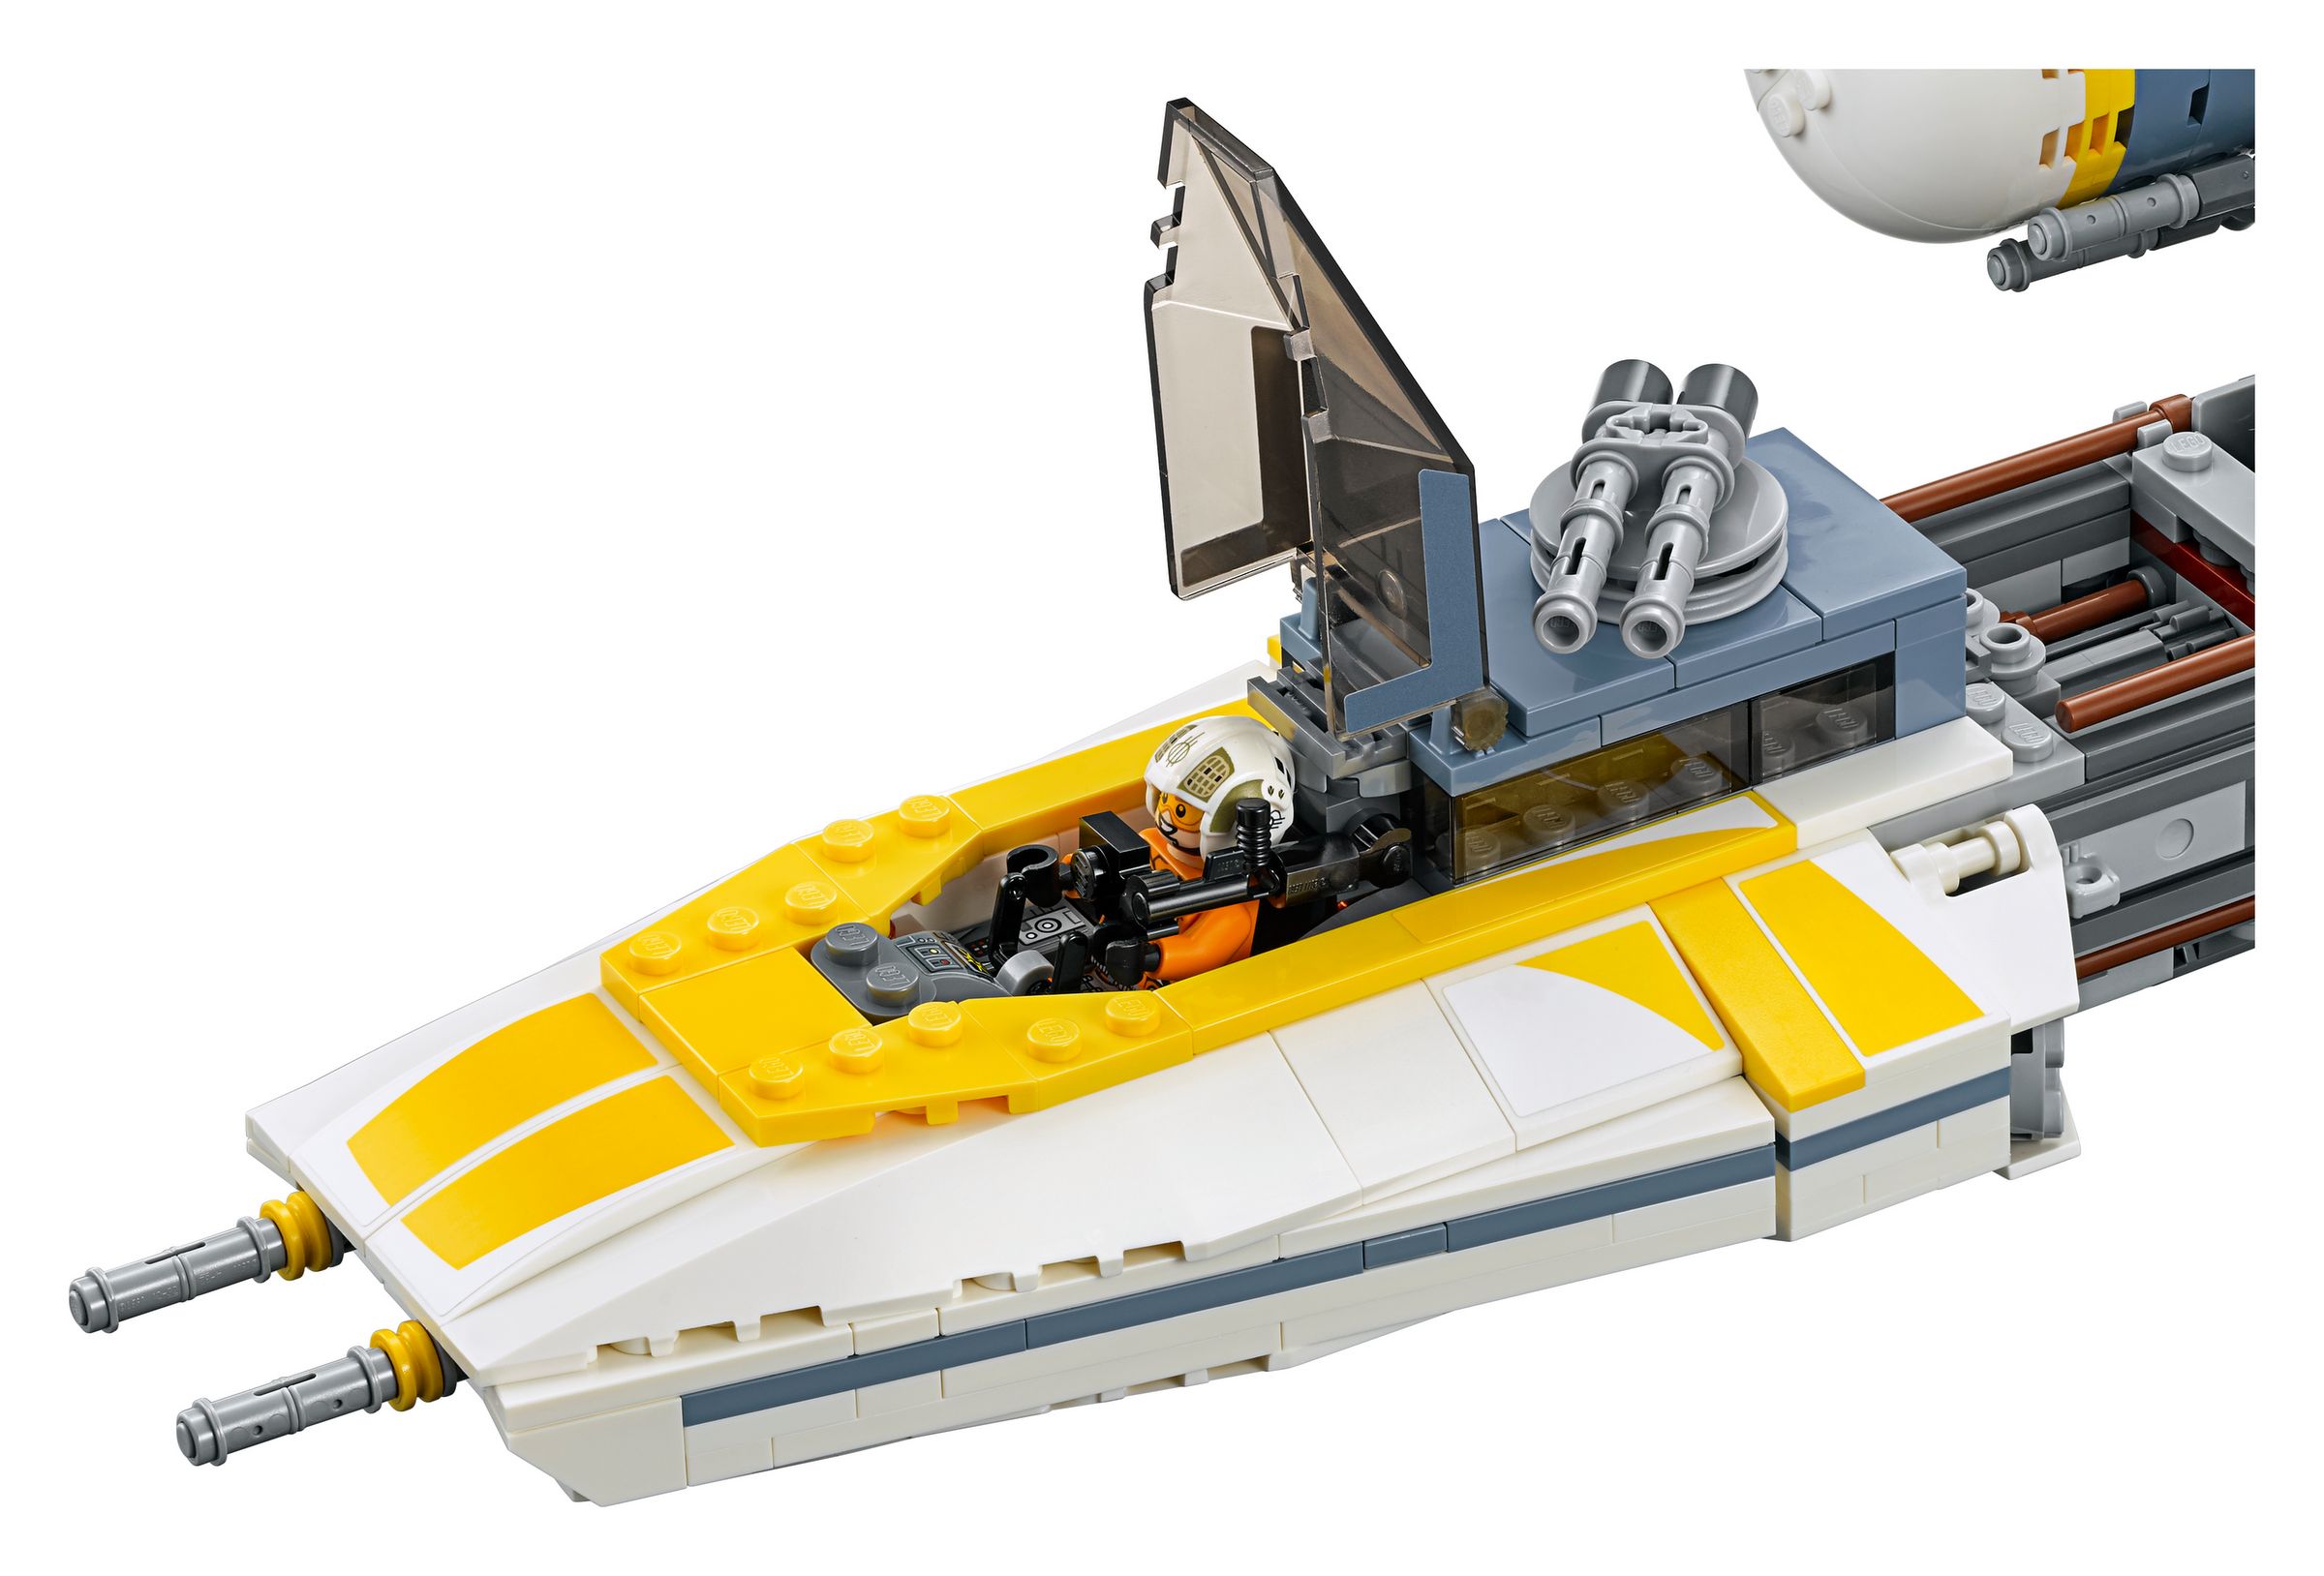 LEGO Star Wars 75181 UCS Y-Wing Starfighter LEGO_75181_alt7.jpg